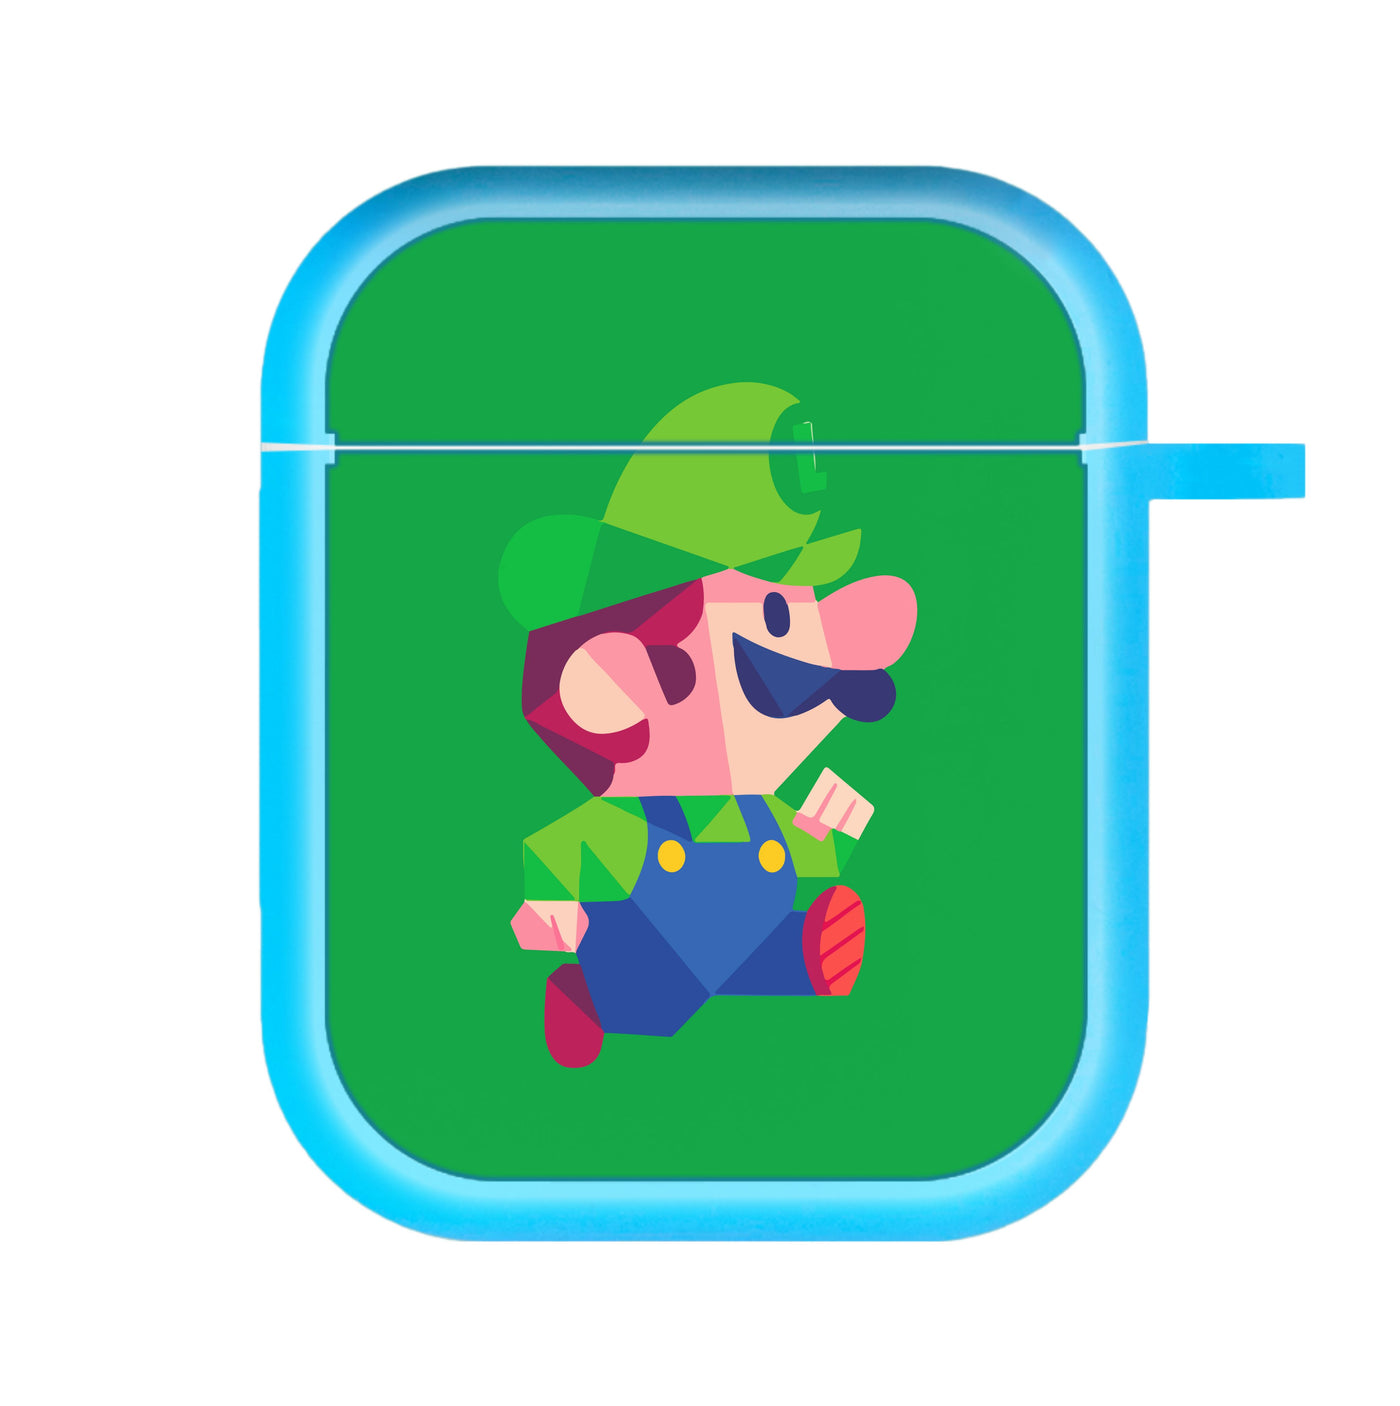 Running Luigi - Mario AirPods Case